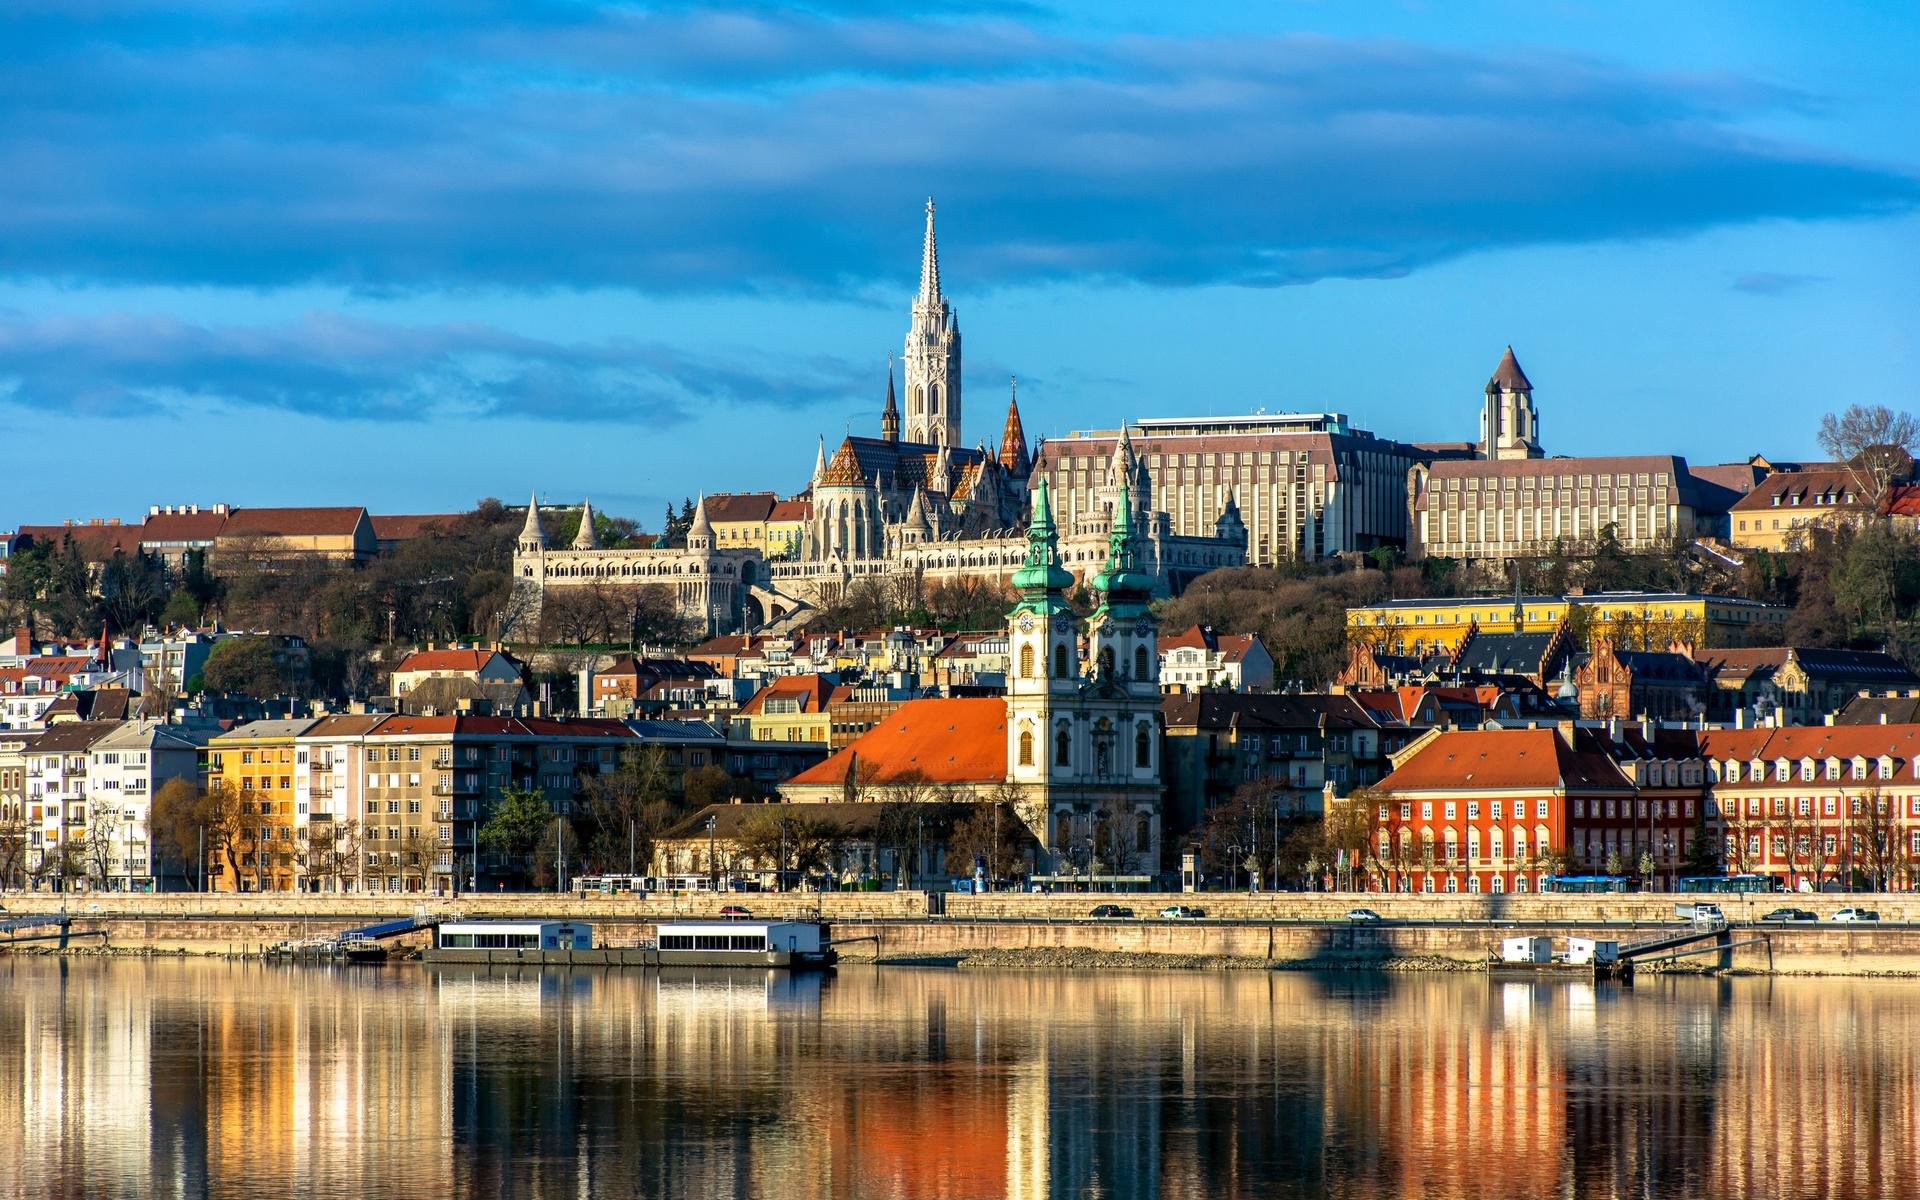 På en niondeplats finns Ungern som enligt Henley Passport Index får 183 poäng. På bilden ser vi delar av Ungerns huvudstad Budapest.